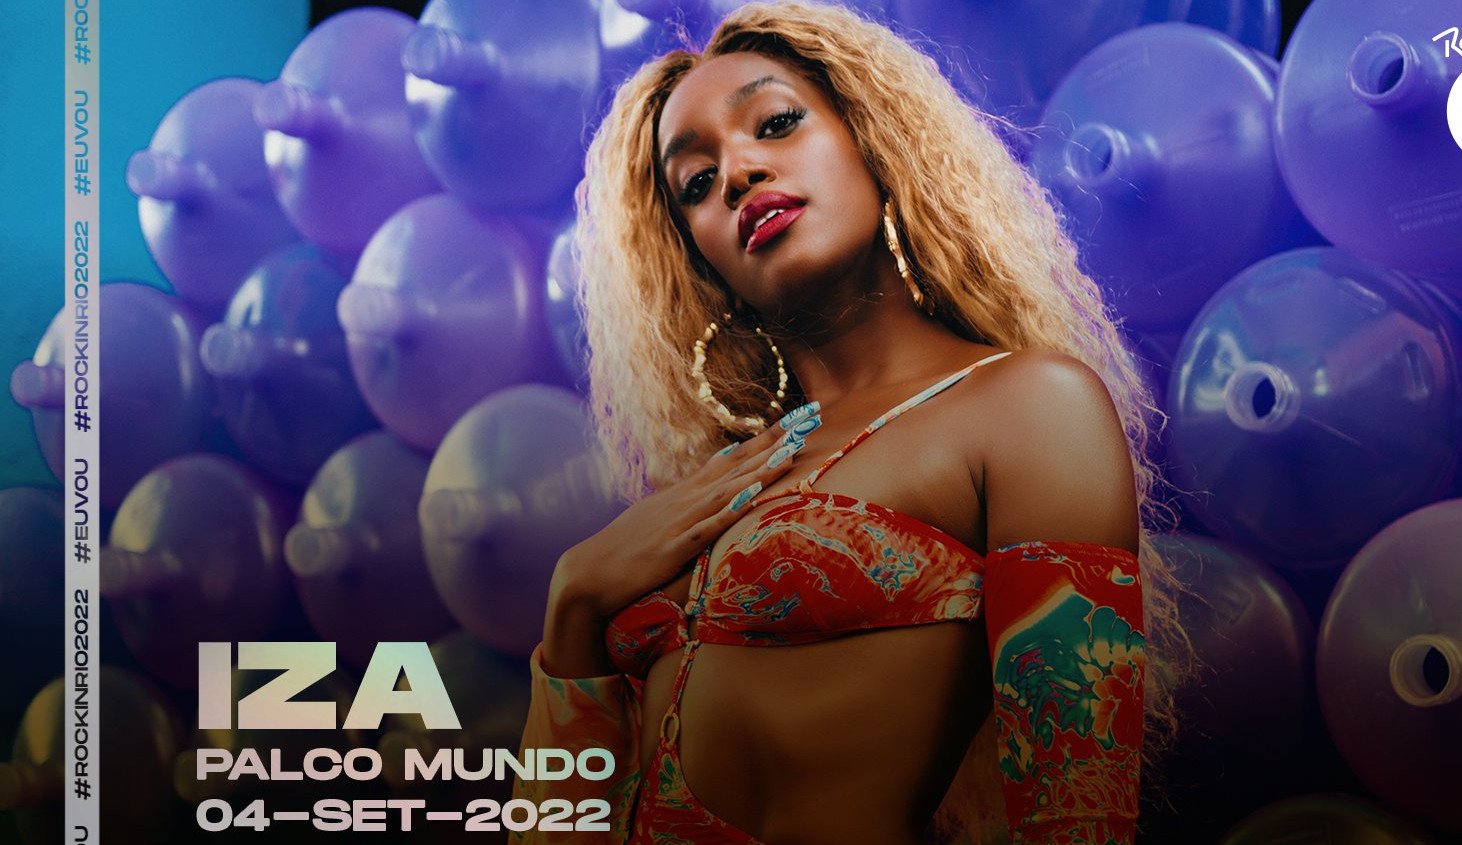 IZA, confirmada no Palco Mundo do Rock in Rio 2022, já curtiu o festival da plateia